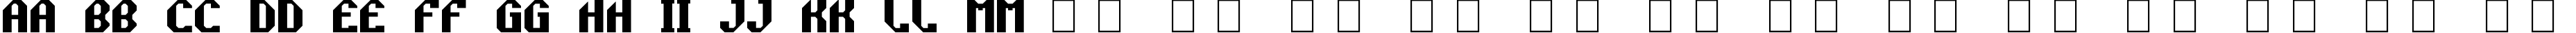 Пример написания английского алфавита шрифтом Rocket Propelled - DGL (Trial)